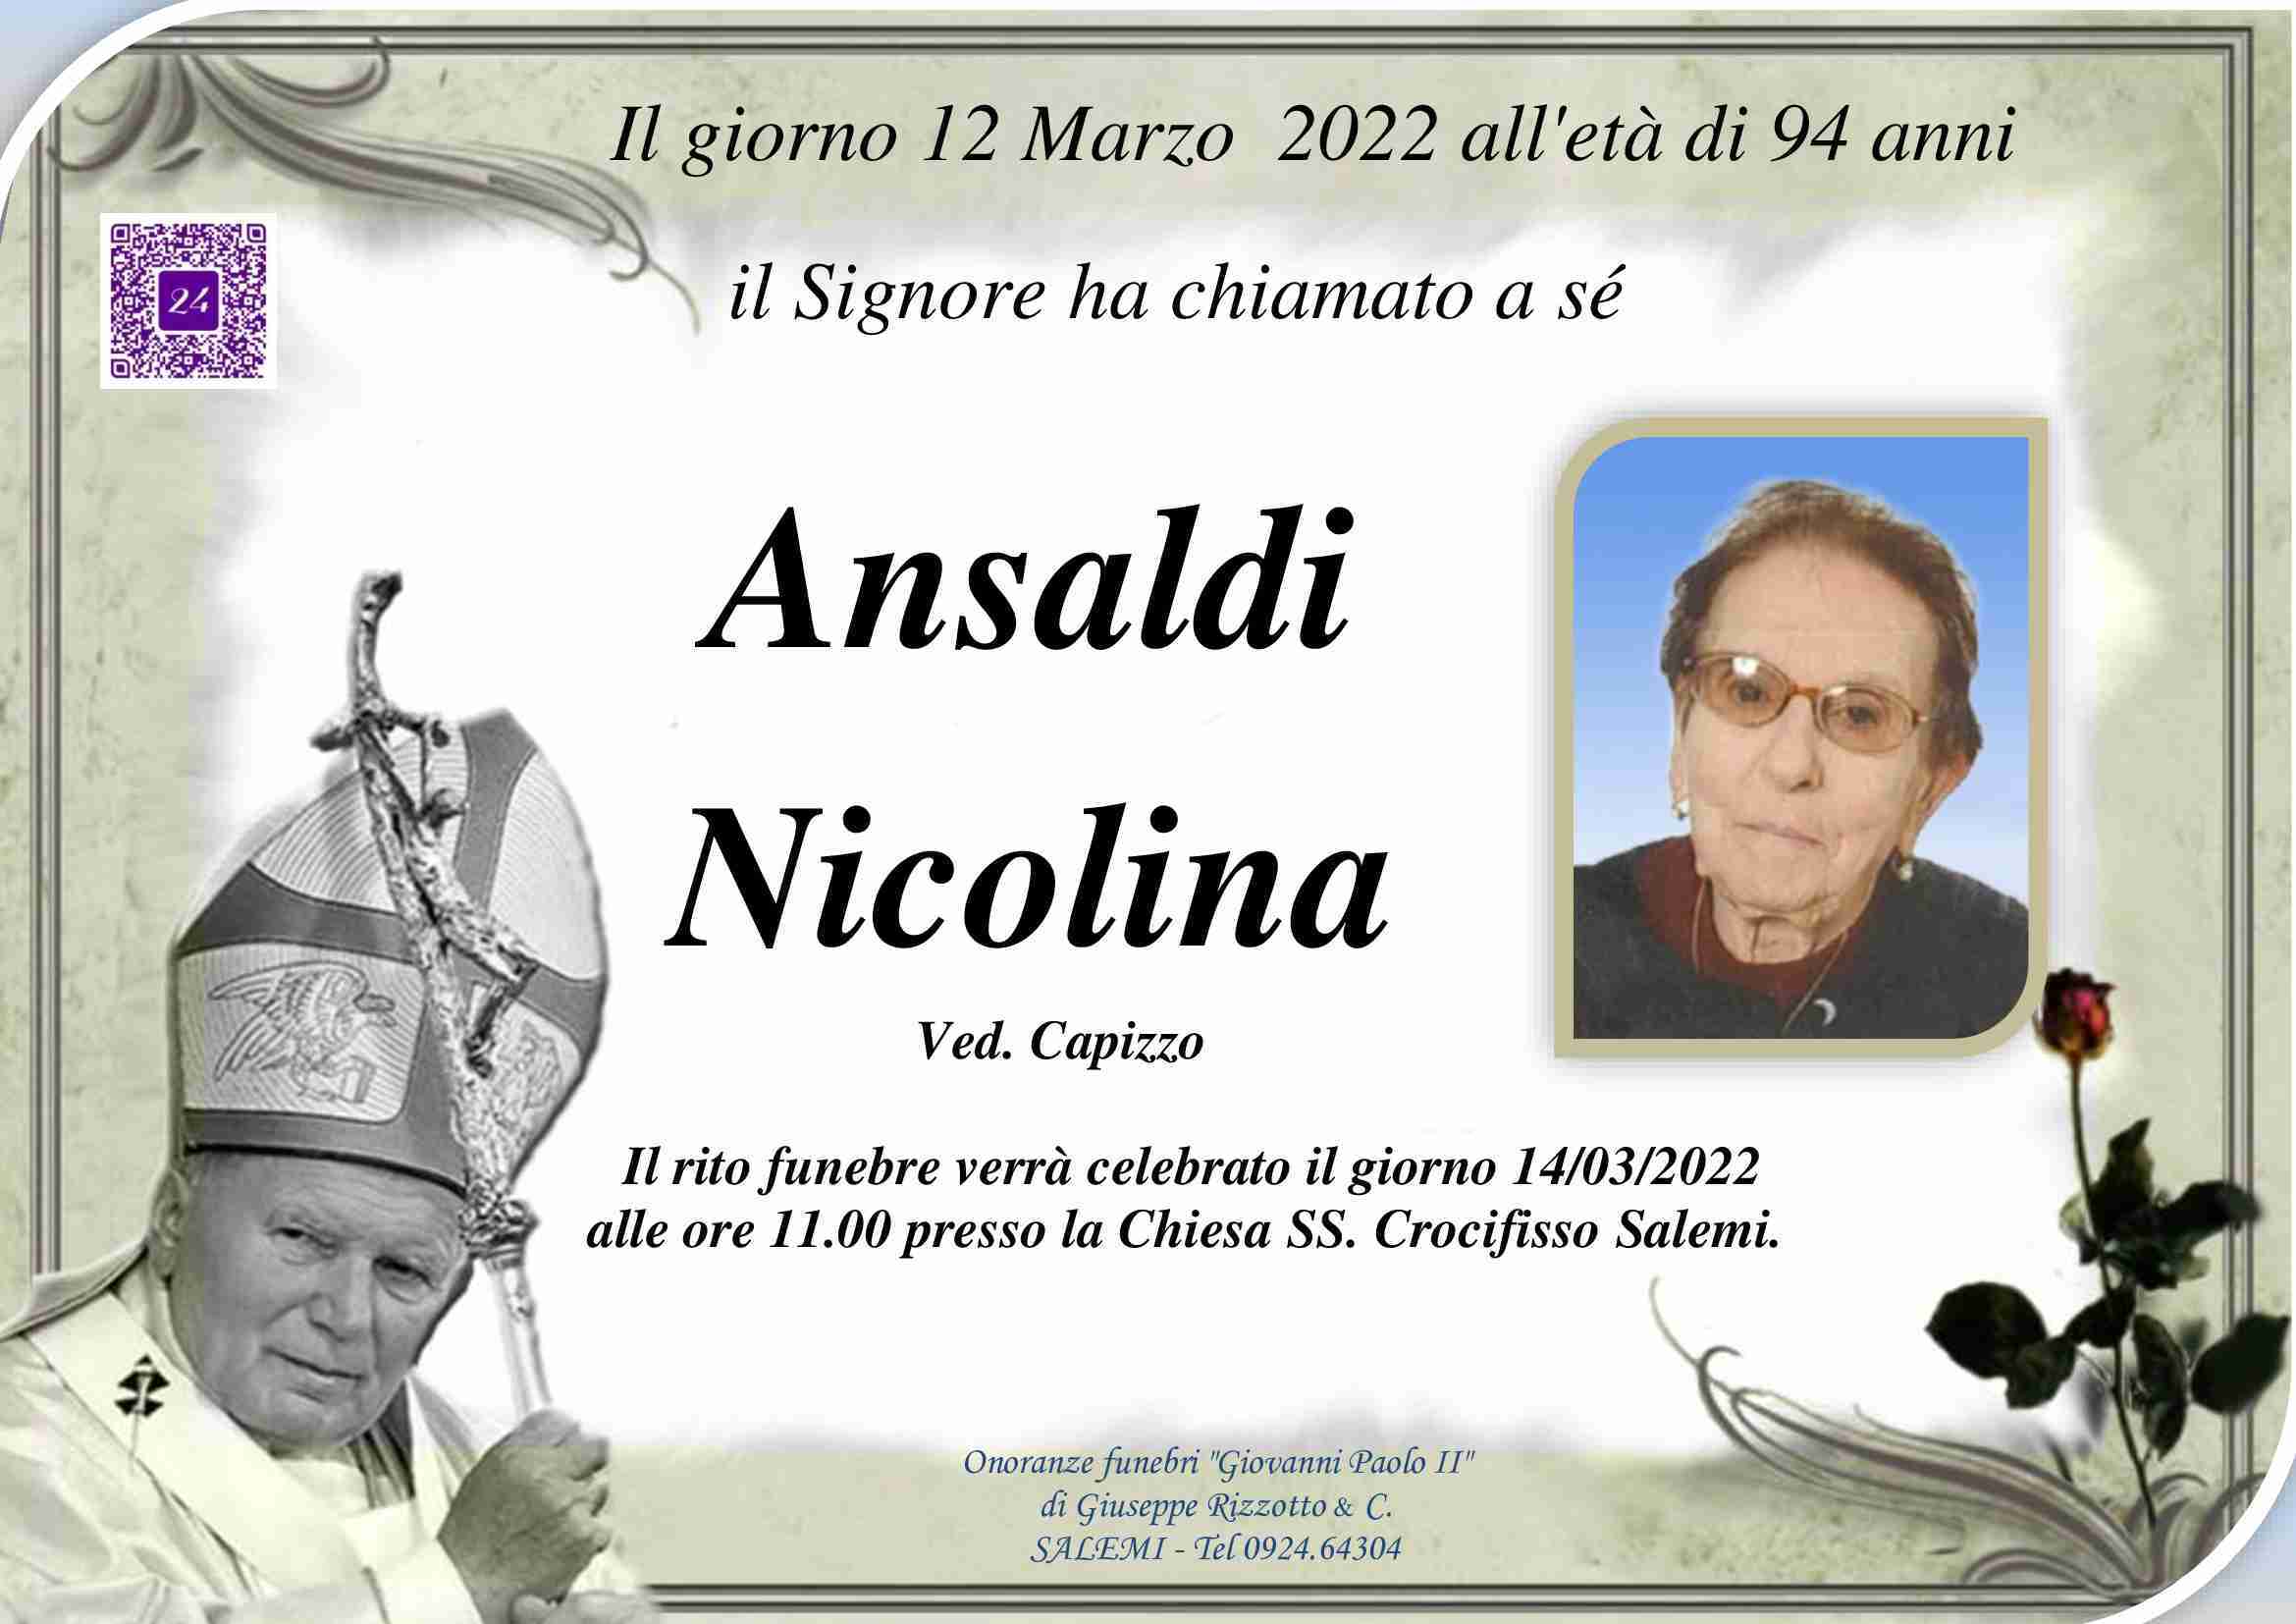 Nicolina Ansaldi